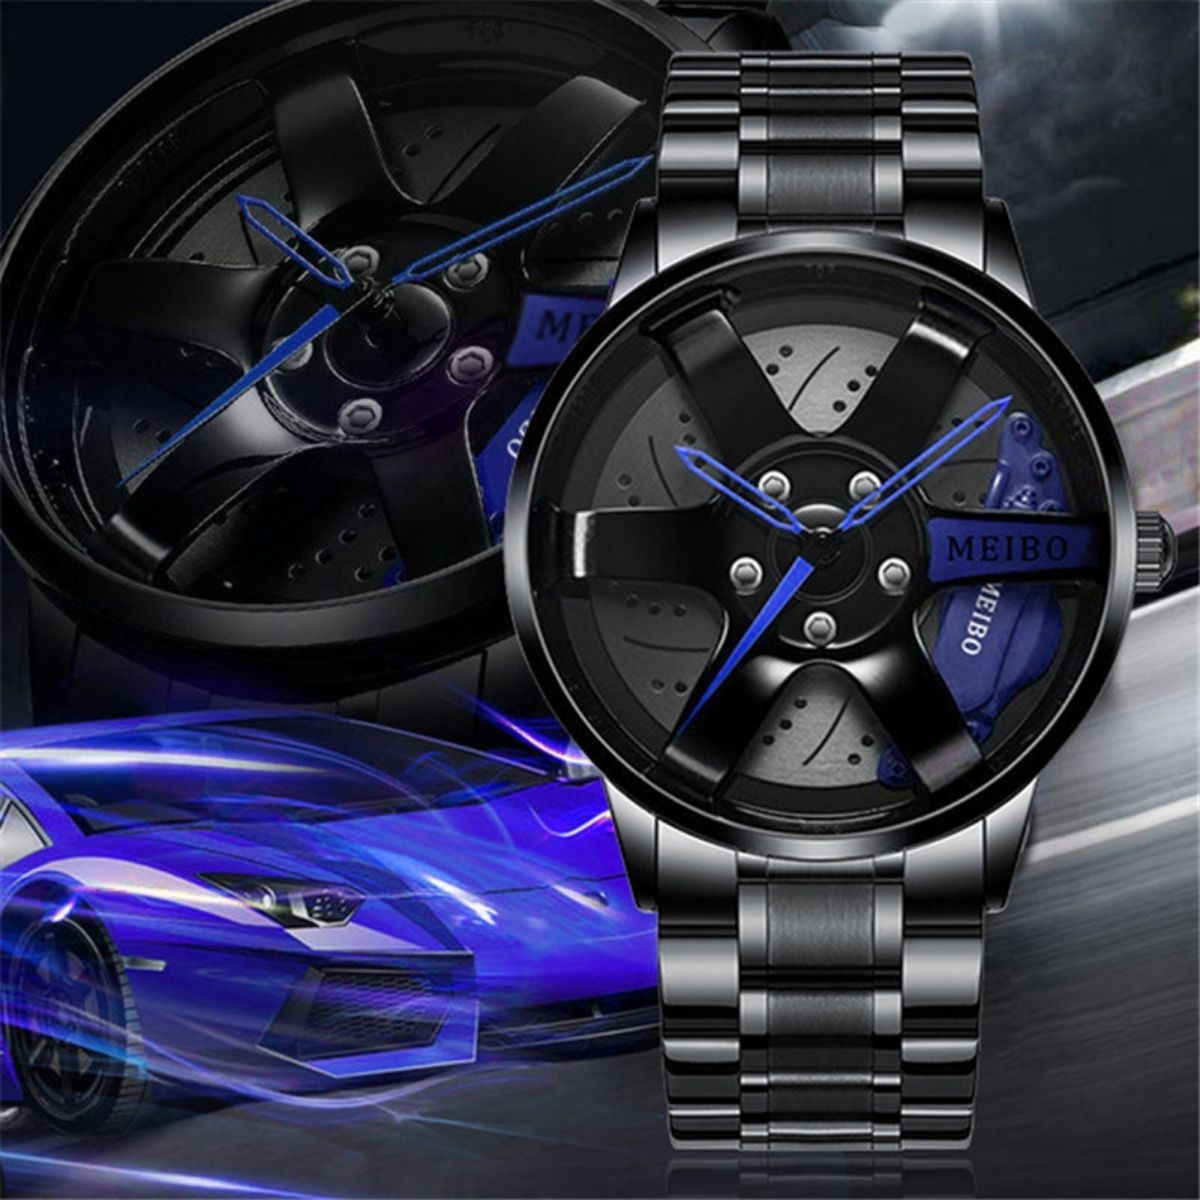 relógio masculino, apaixonados por carros, velocidade, aço inoxidável, relógio de aço inoxidável, design exclusivo, roda de liga leve, qualidade premium, automobilismo, pódio, visor de cristal hardlex, relógio diferenciado,